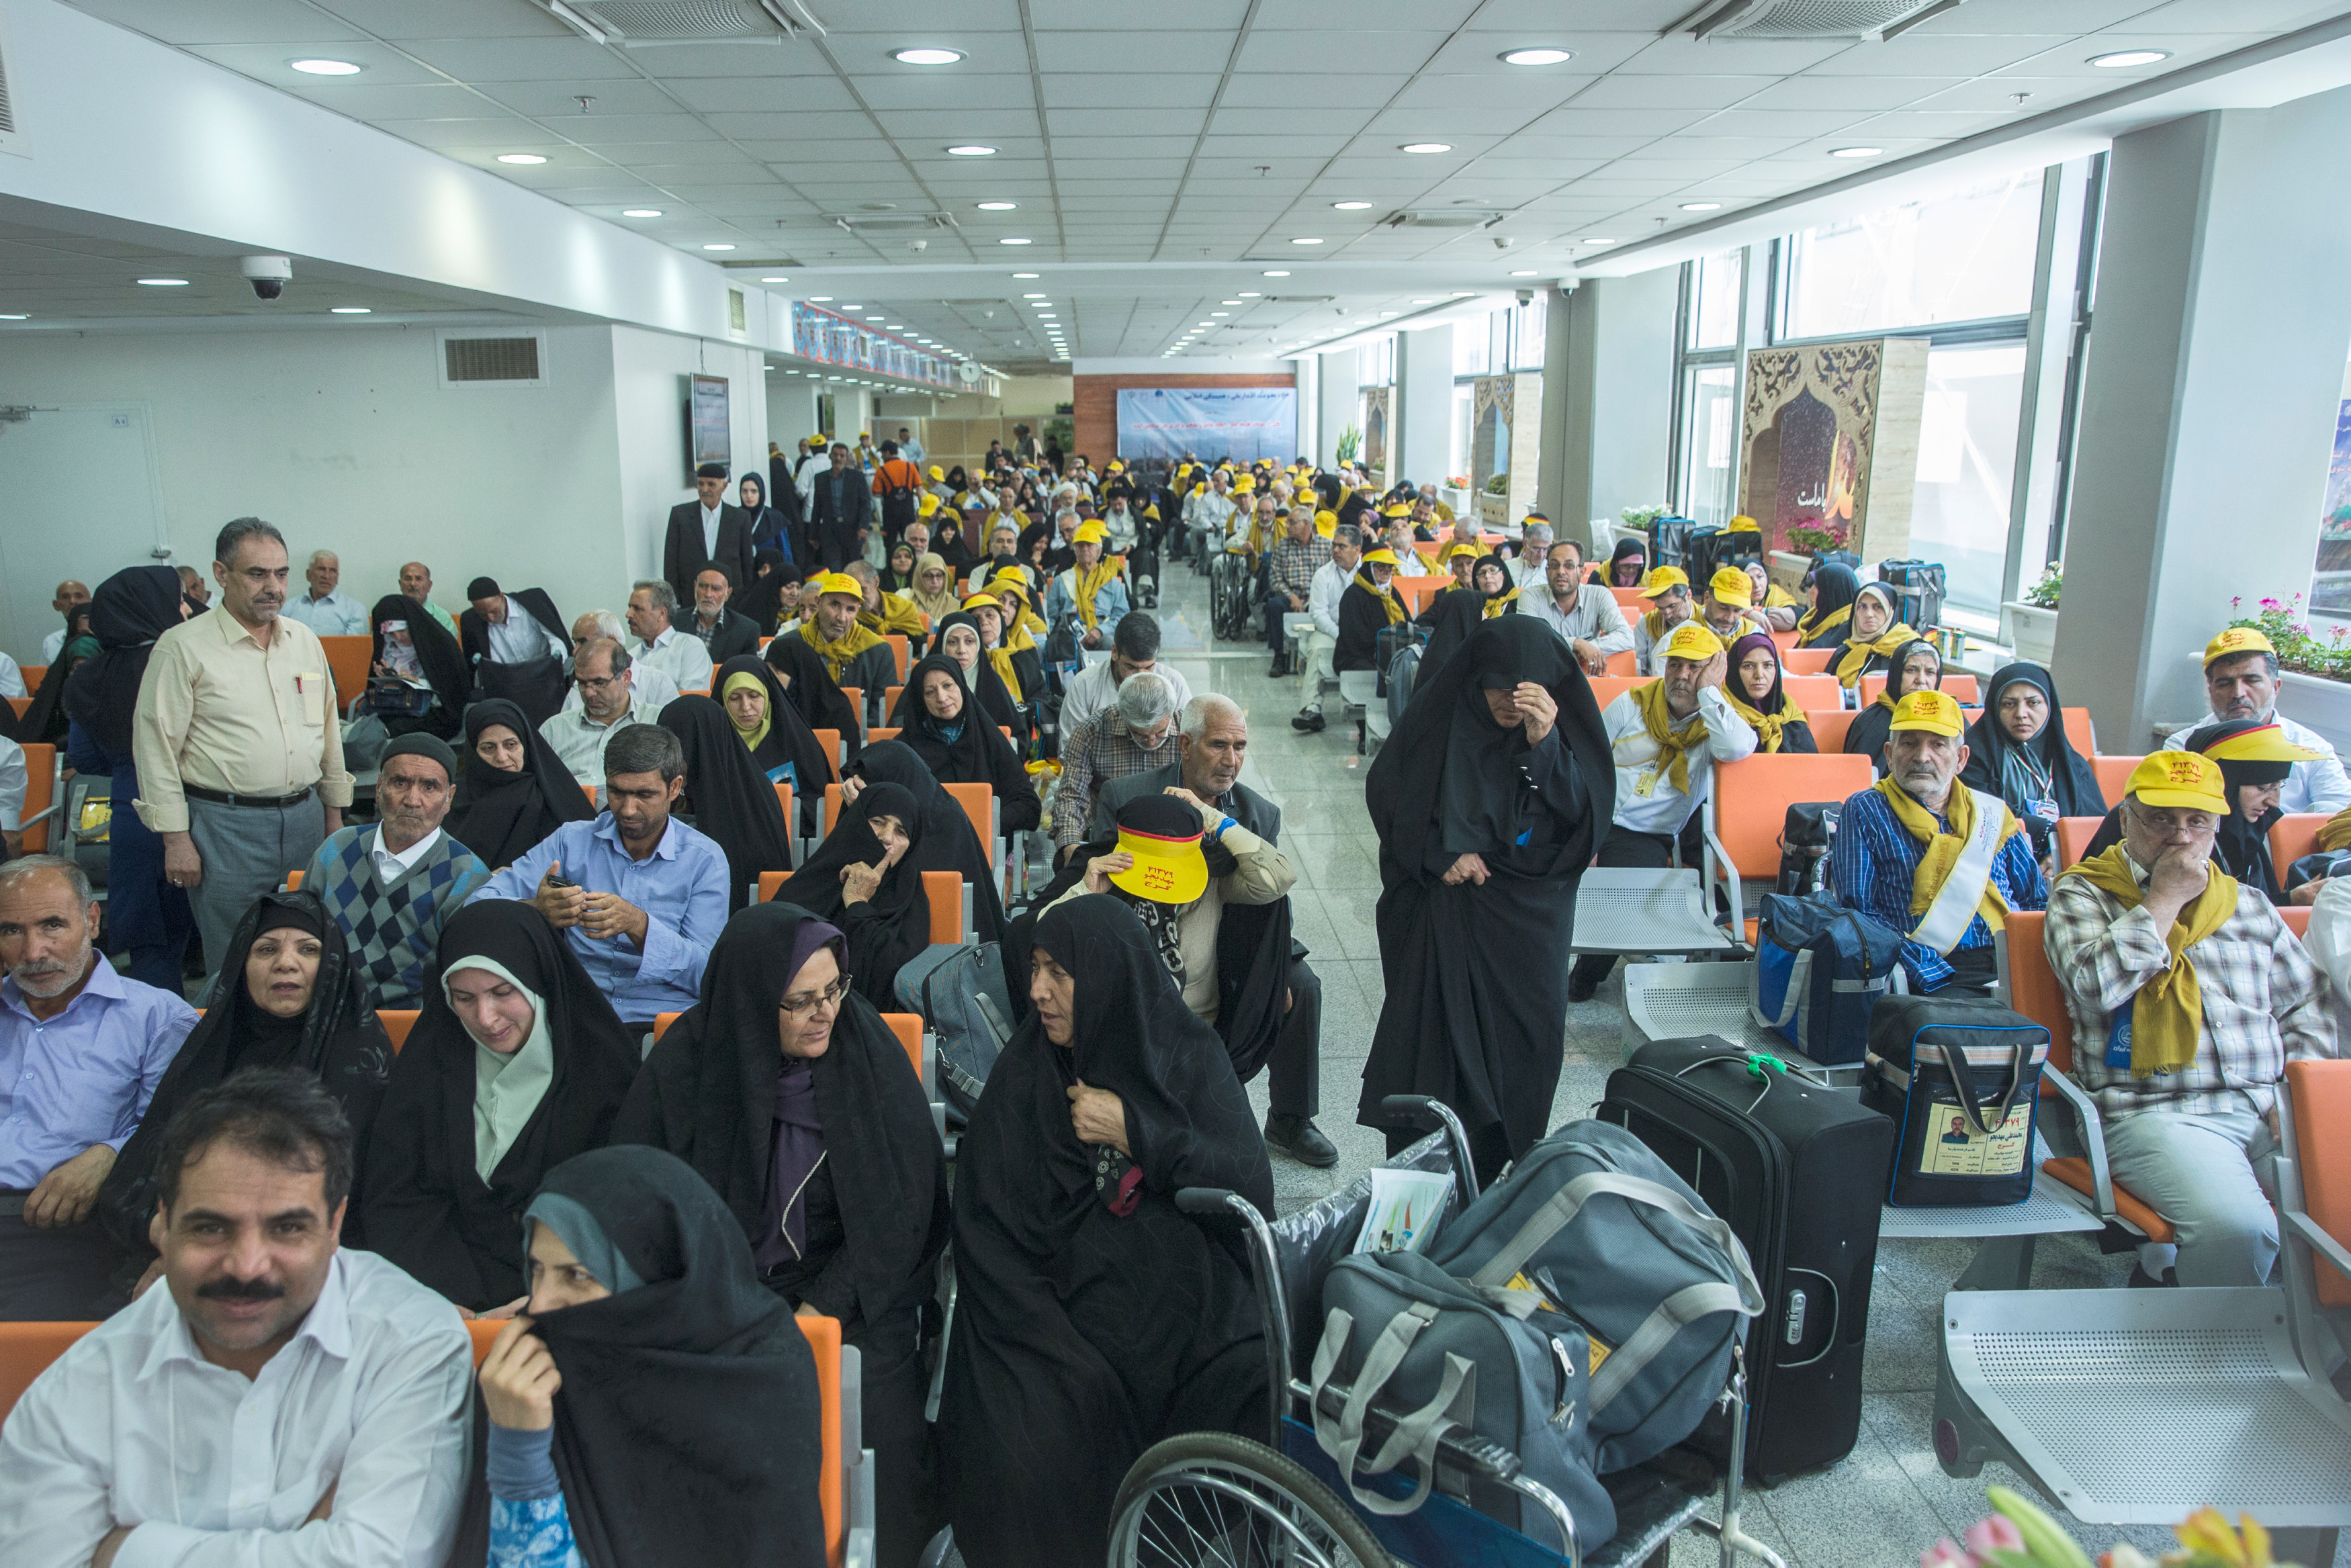 انتظار الحجاج الإيرانيين فى مطار للسفر إلى السعودية